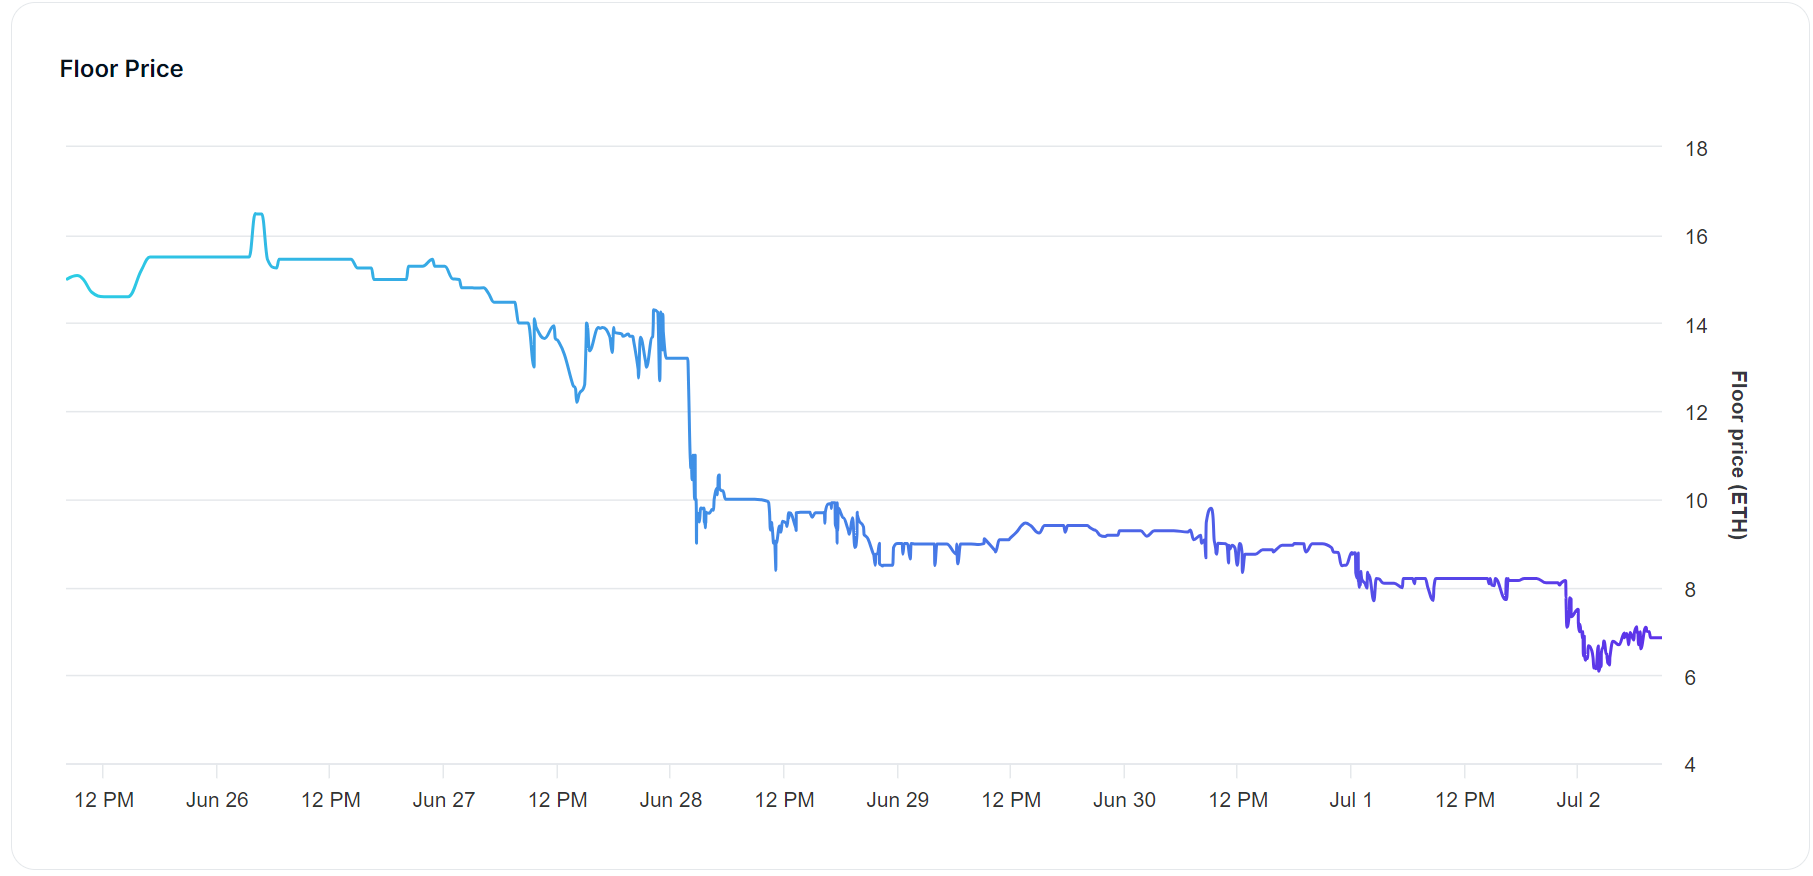 Минимальная цена Azuki NFT резко упала до 6,85 ETH, на 54% за последние 7 дней